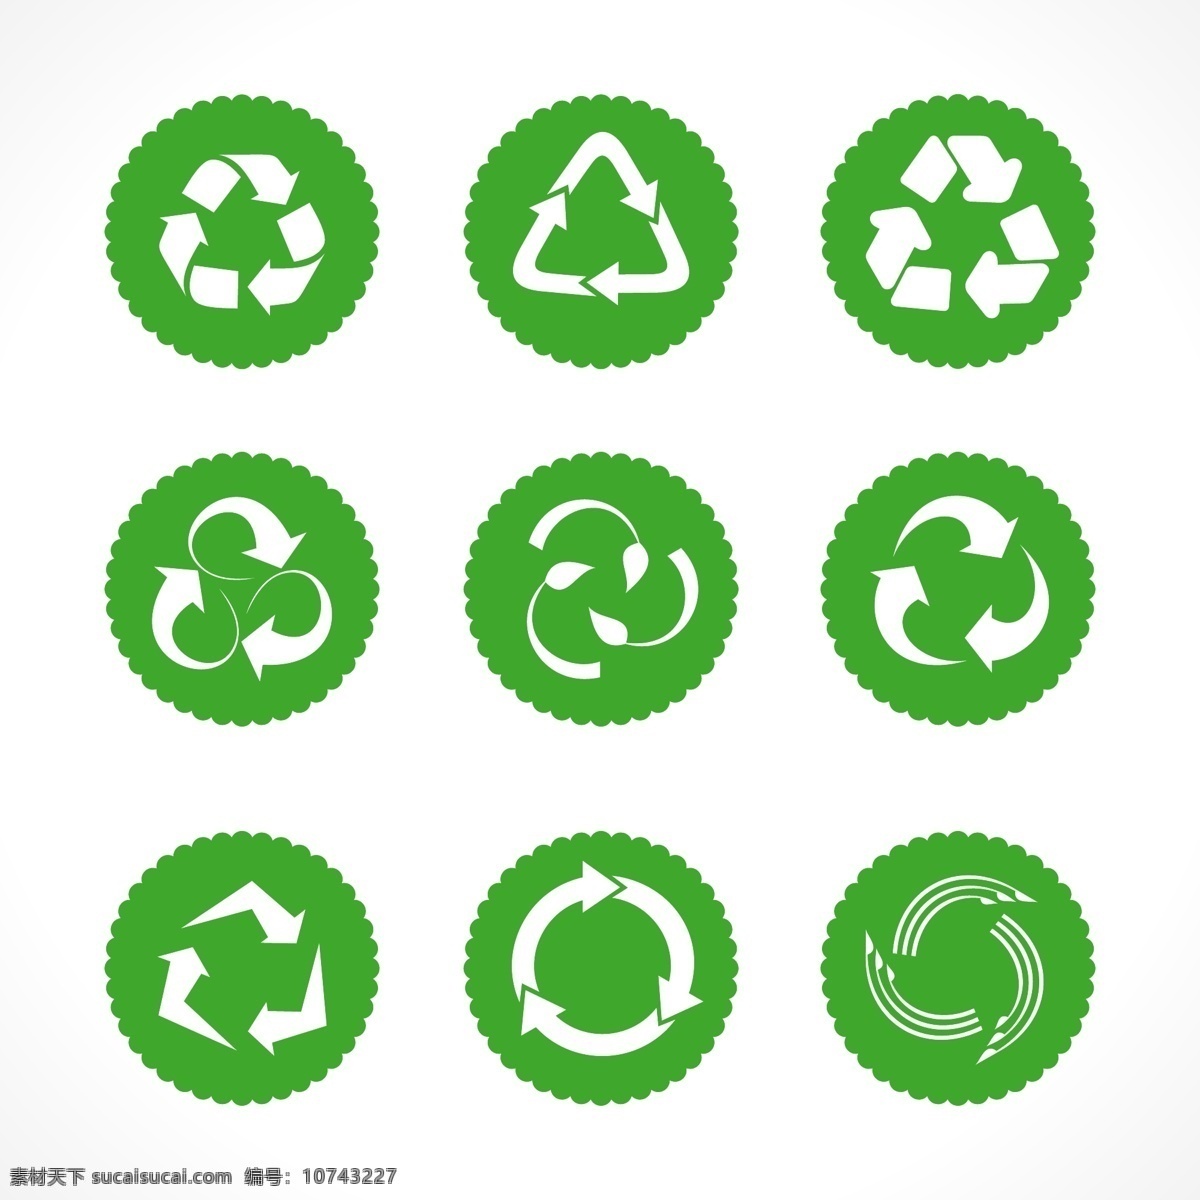 循环图标 可回收图标 循环利用图标 循环回收图标 绿色环保图标 绿色生态环保 环保图标 主题图标 绿色生态图标 图标 绿色 环保 节能 eco 箭头 可回收 可循环